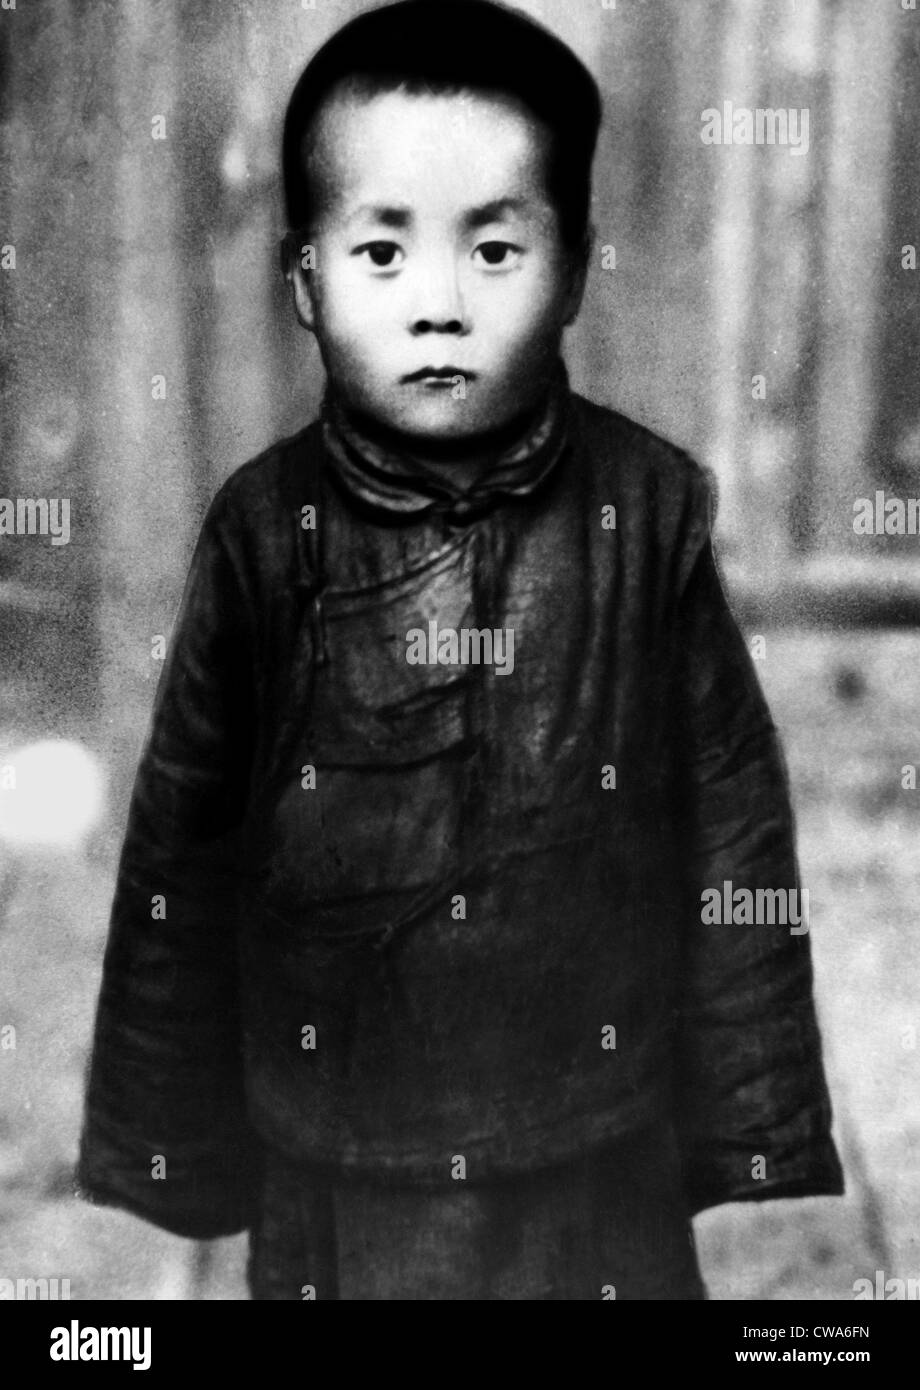 Tenzin Gyatso bevor der Dalai Lama, 1940 gemacht. Höflichkeit: CSU Archive/Everett Collection Stockfoto